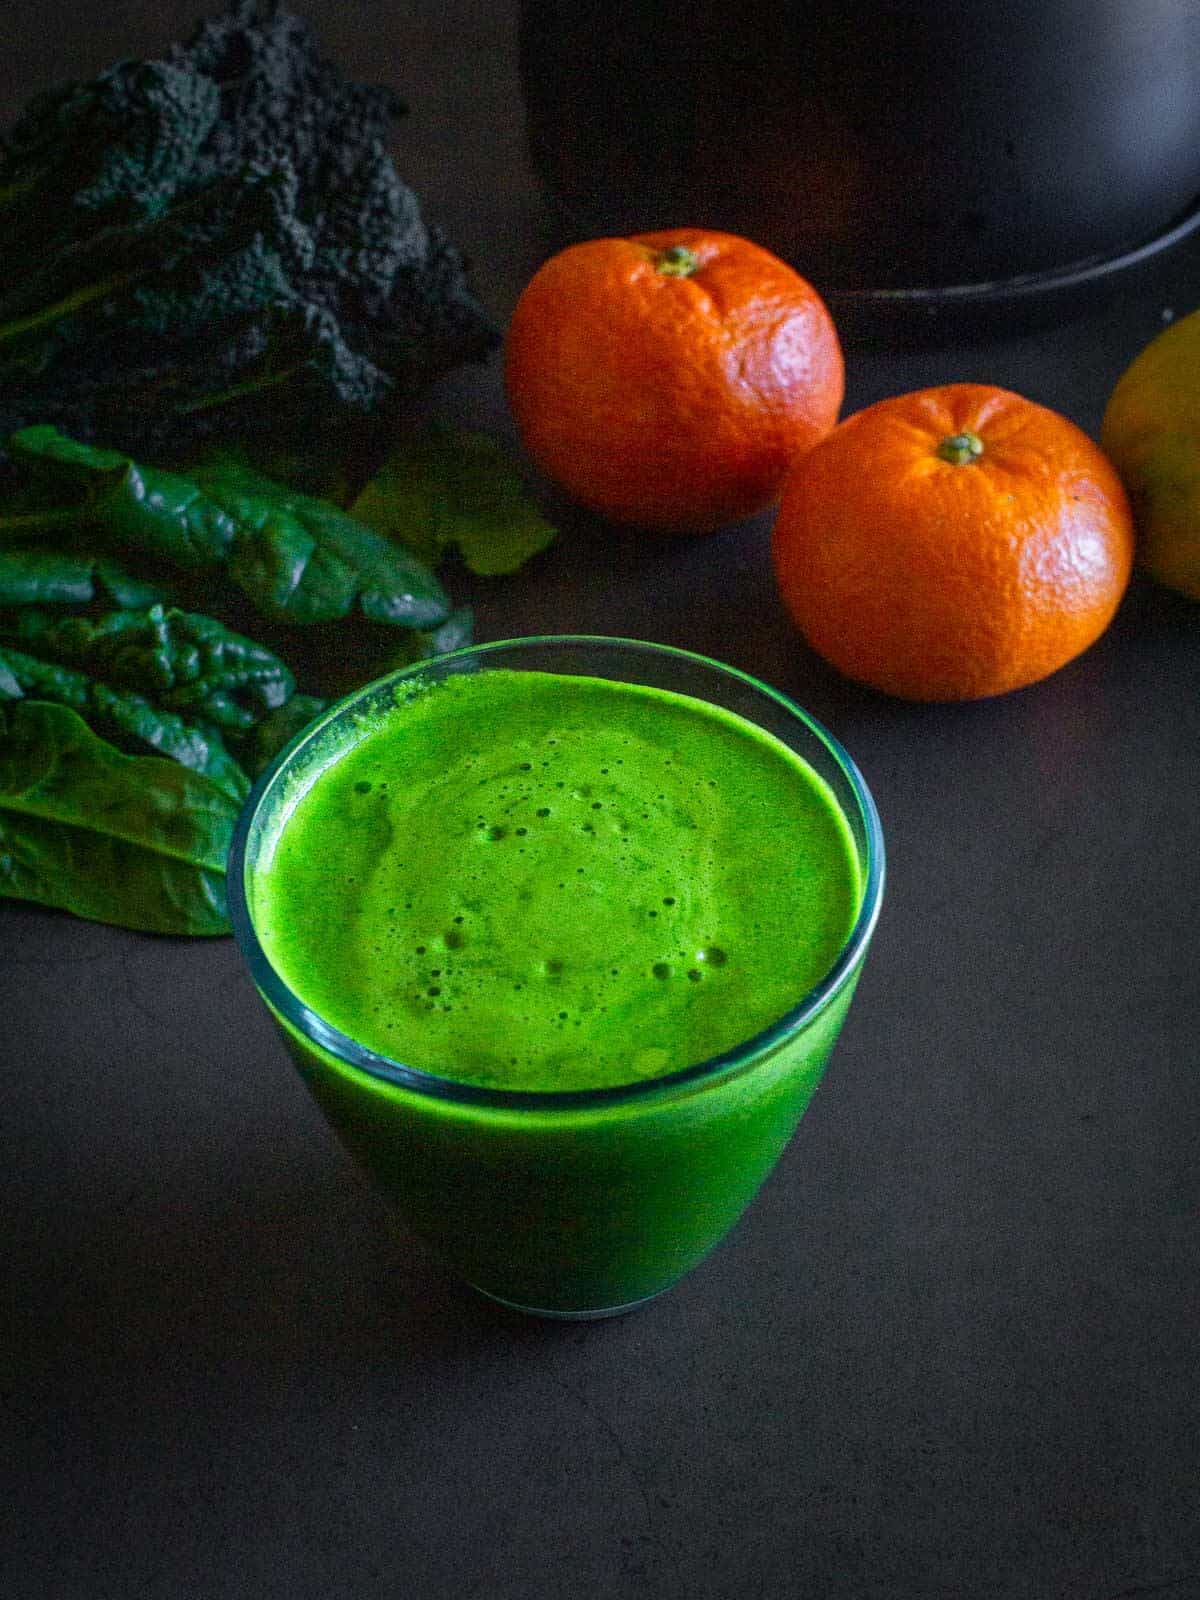 Simple Green Juice Recipe